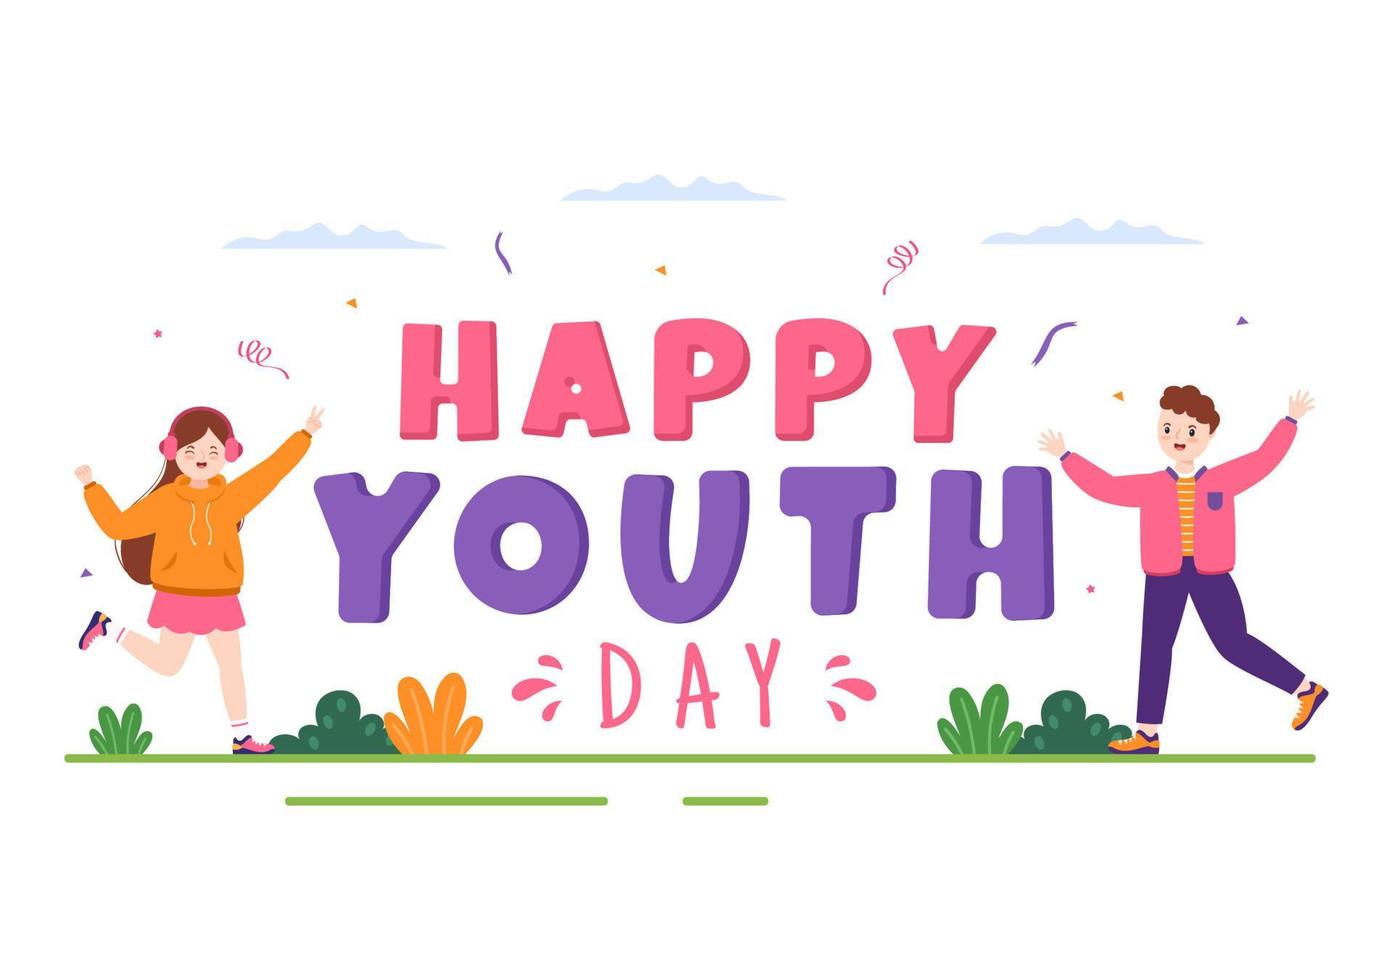 illustration de dessin animé mignon bonne journée internationale de la jeunesse avec de jeunes garçons et filles pour la campagne en arrière-plan de style plat vecteur